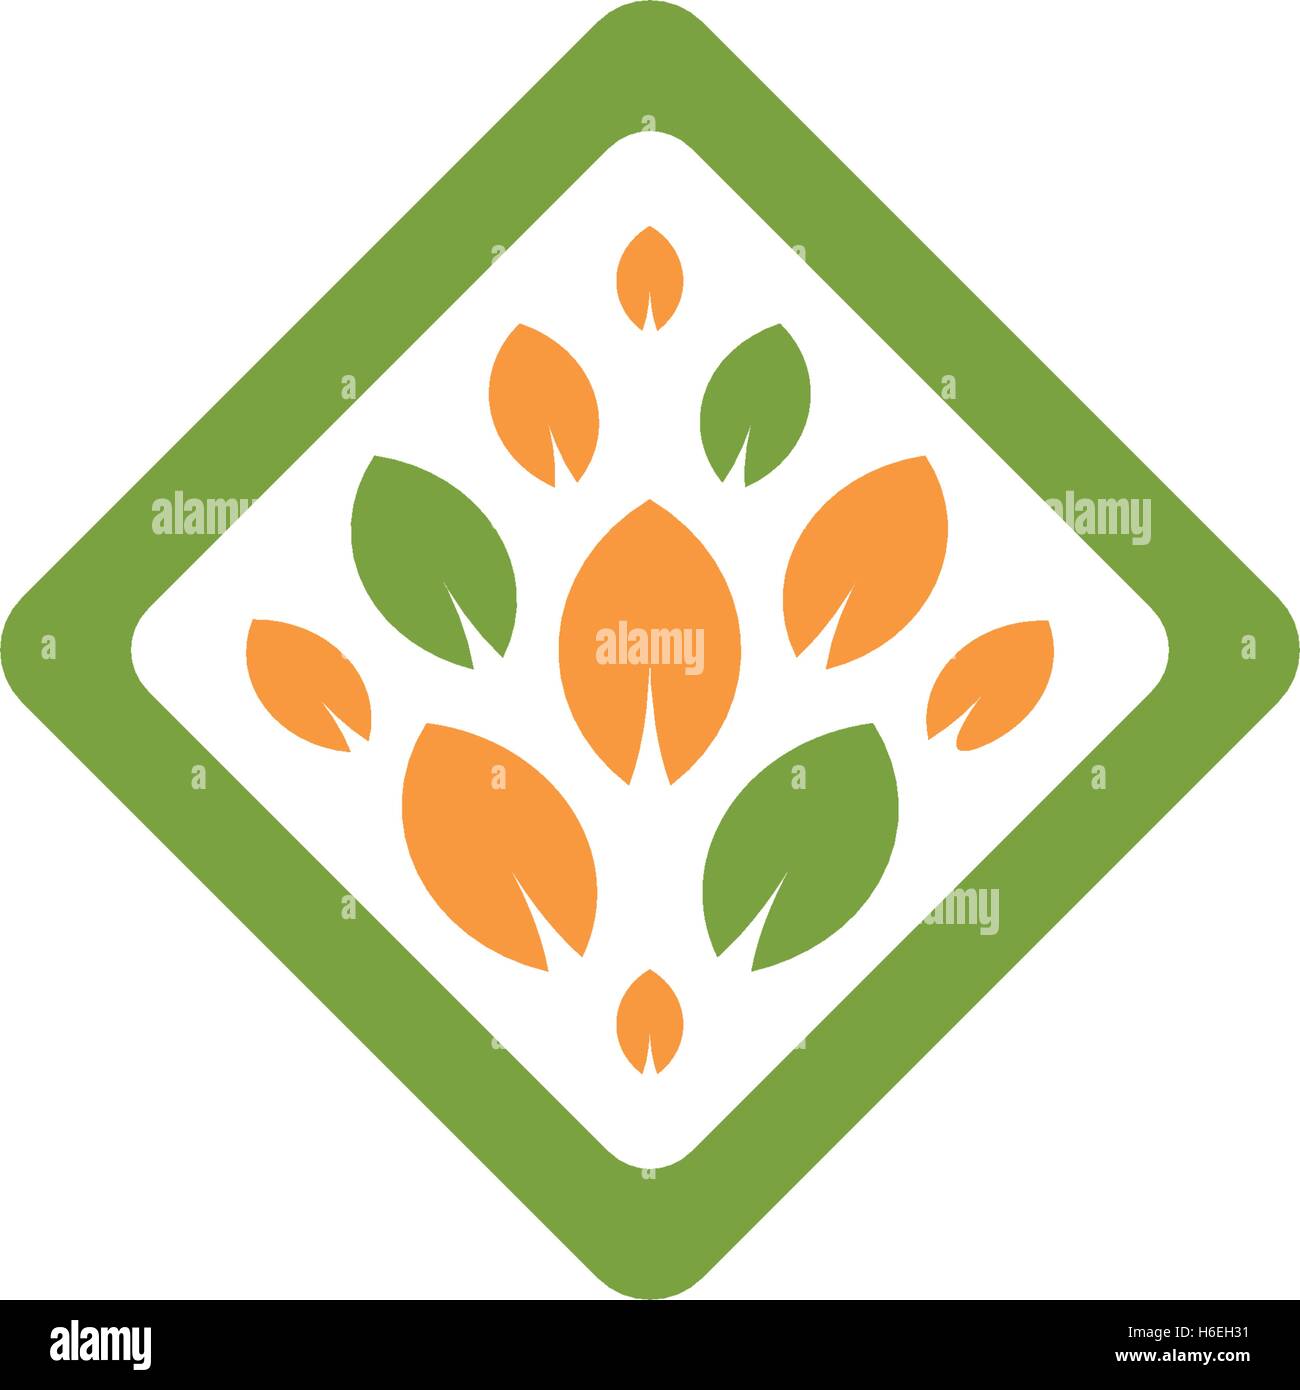 Résumé isolés couleur vert et orange forme rhombus tree logo. Logotype de la feuille. L'icône de la cosmétique naturelle. Eco system élément. Produits biologiques signe. Emblème de la santé. Vector illustration de la feuille. Illustration de Vecteur